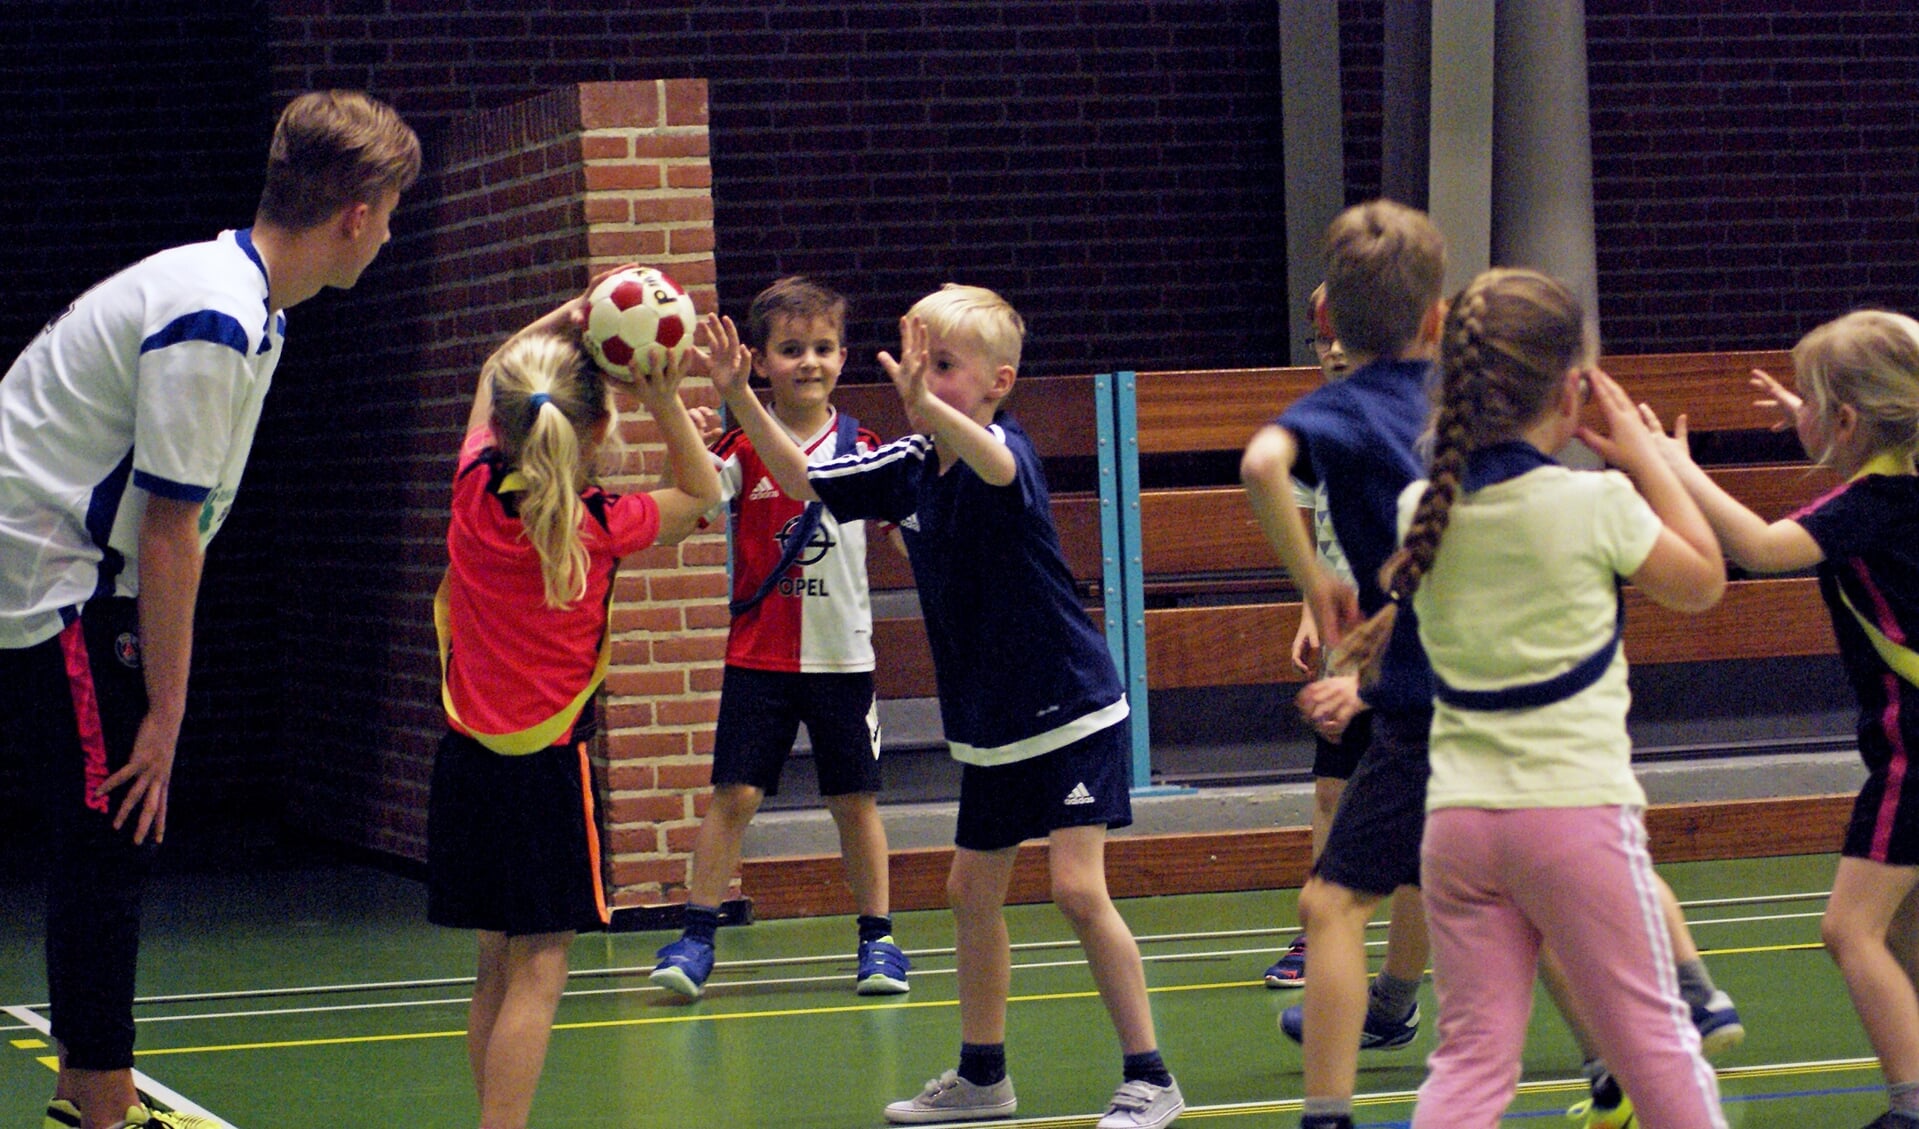 Handbal- en gymnastiekactiviteiten tijdens de Quintus en Achilles instuif. Foto: SV Quintus